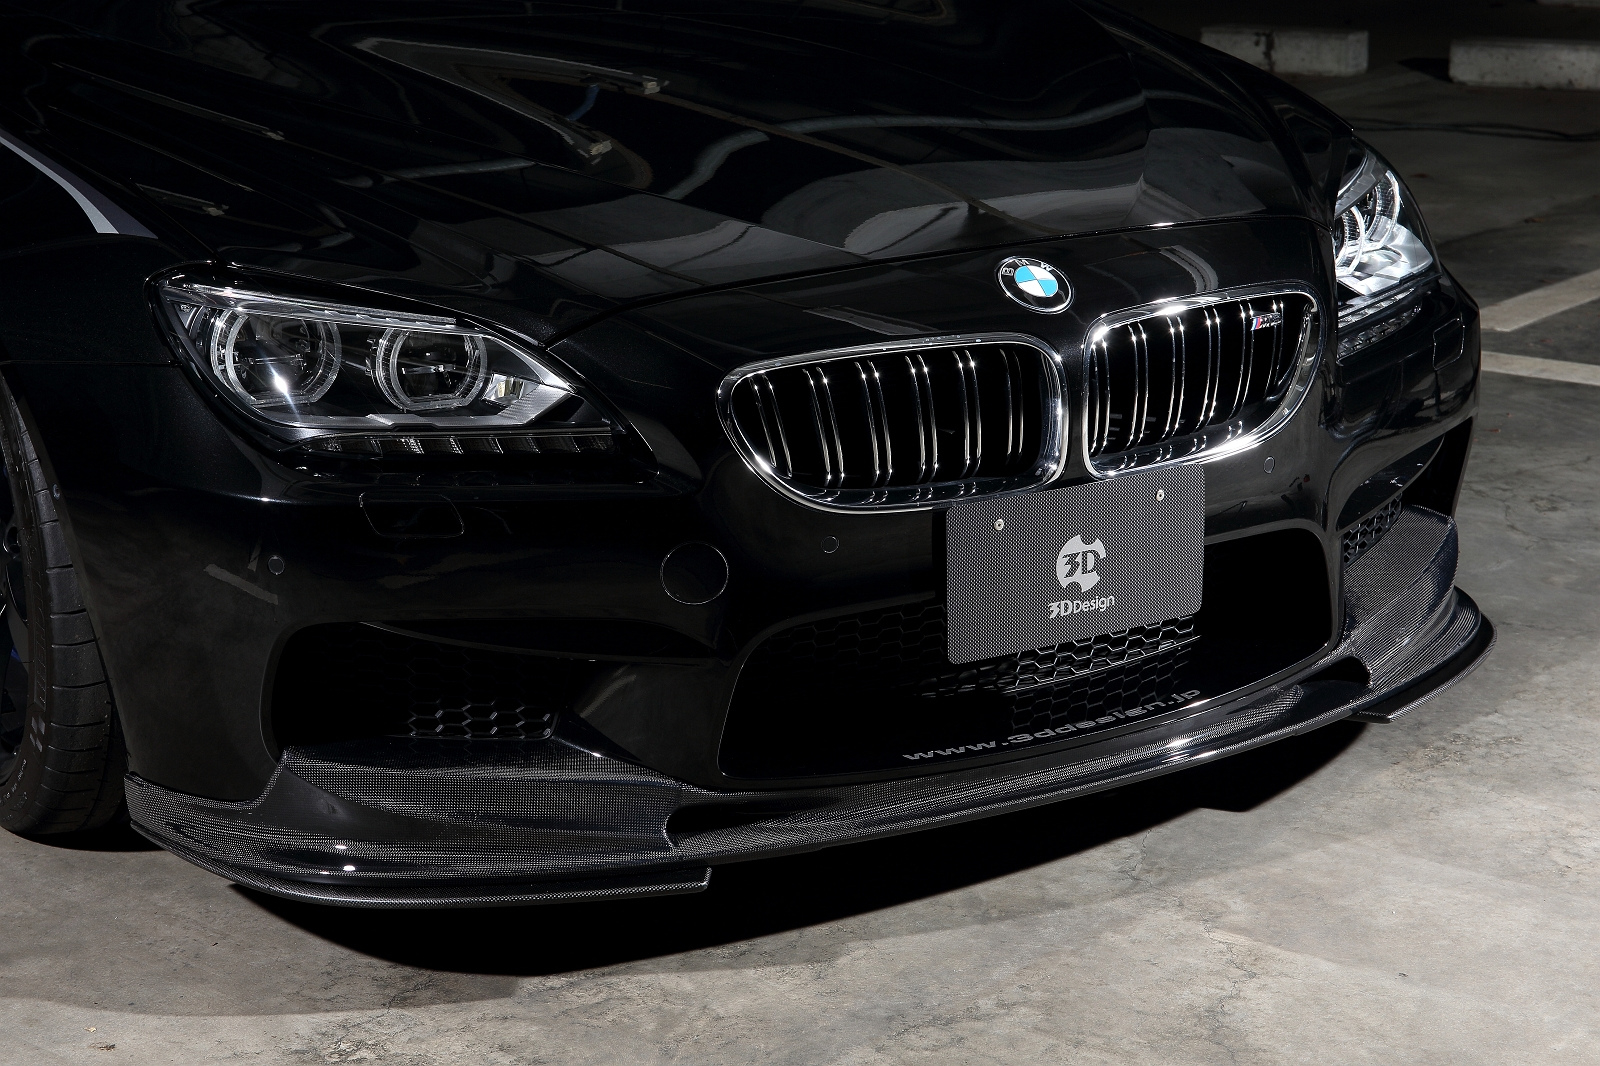 BMW M6 Gran Coupe krijgt andere details door 3D Design